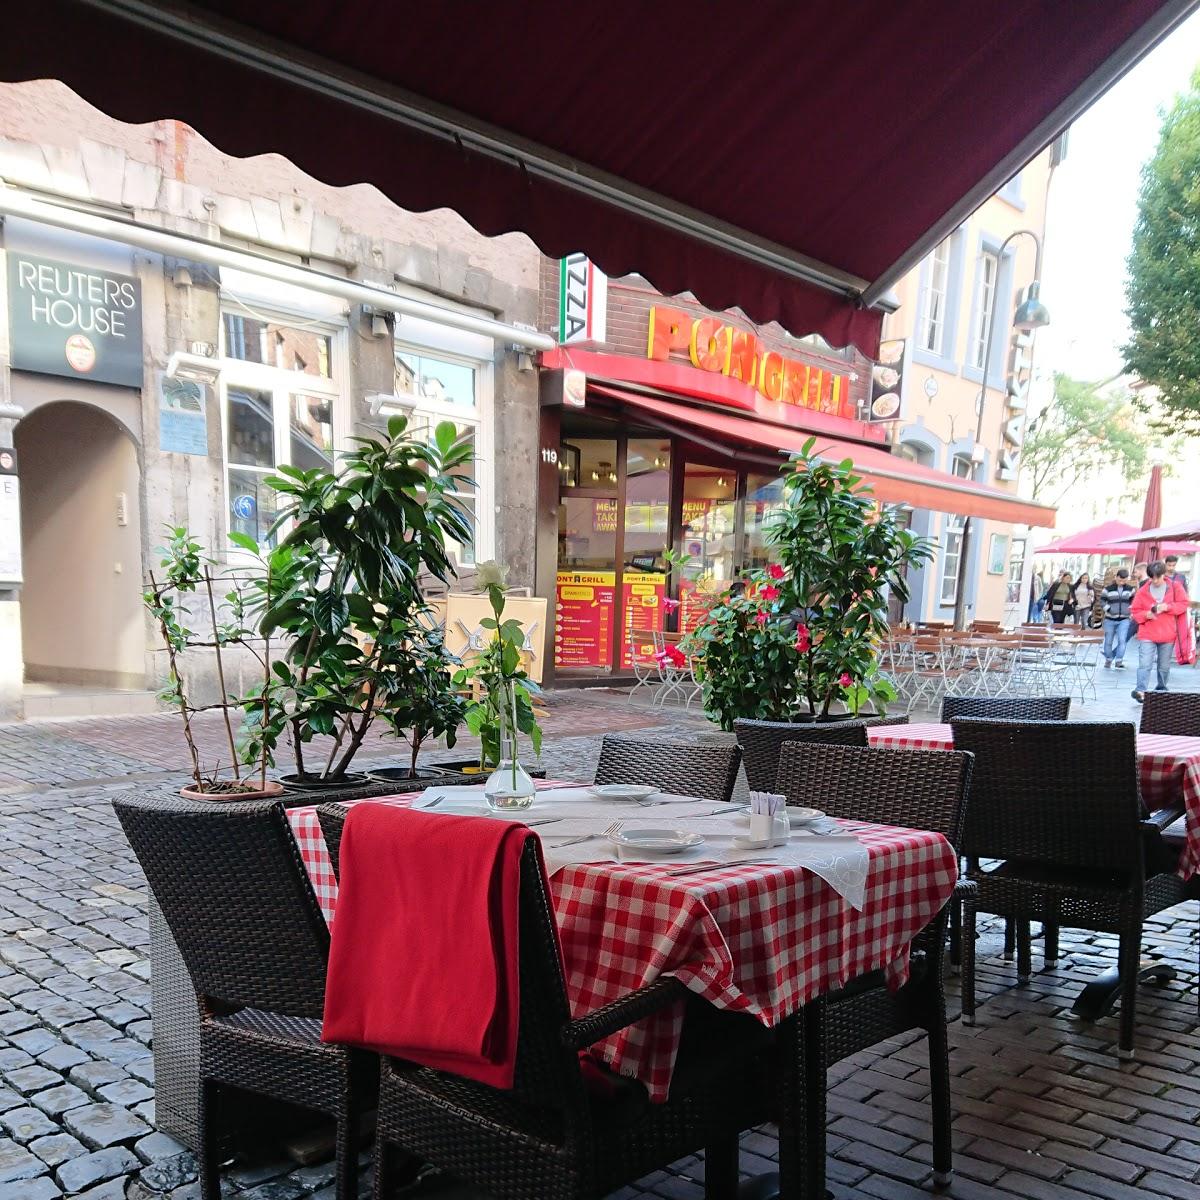 Restaurant "Pizzeria Sole mio" in Aachen